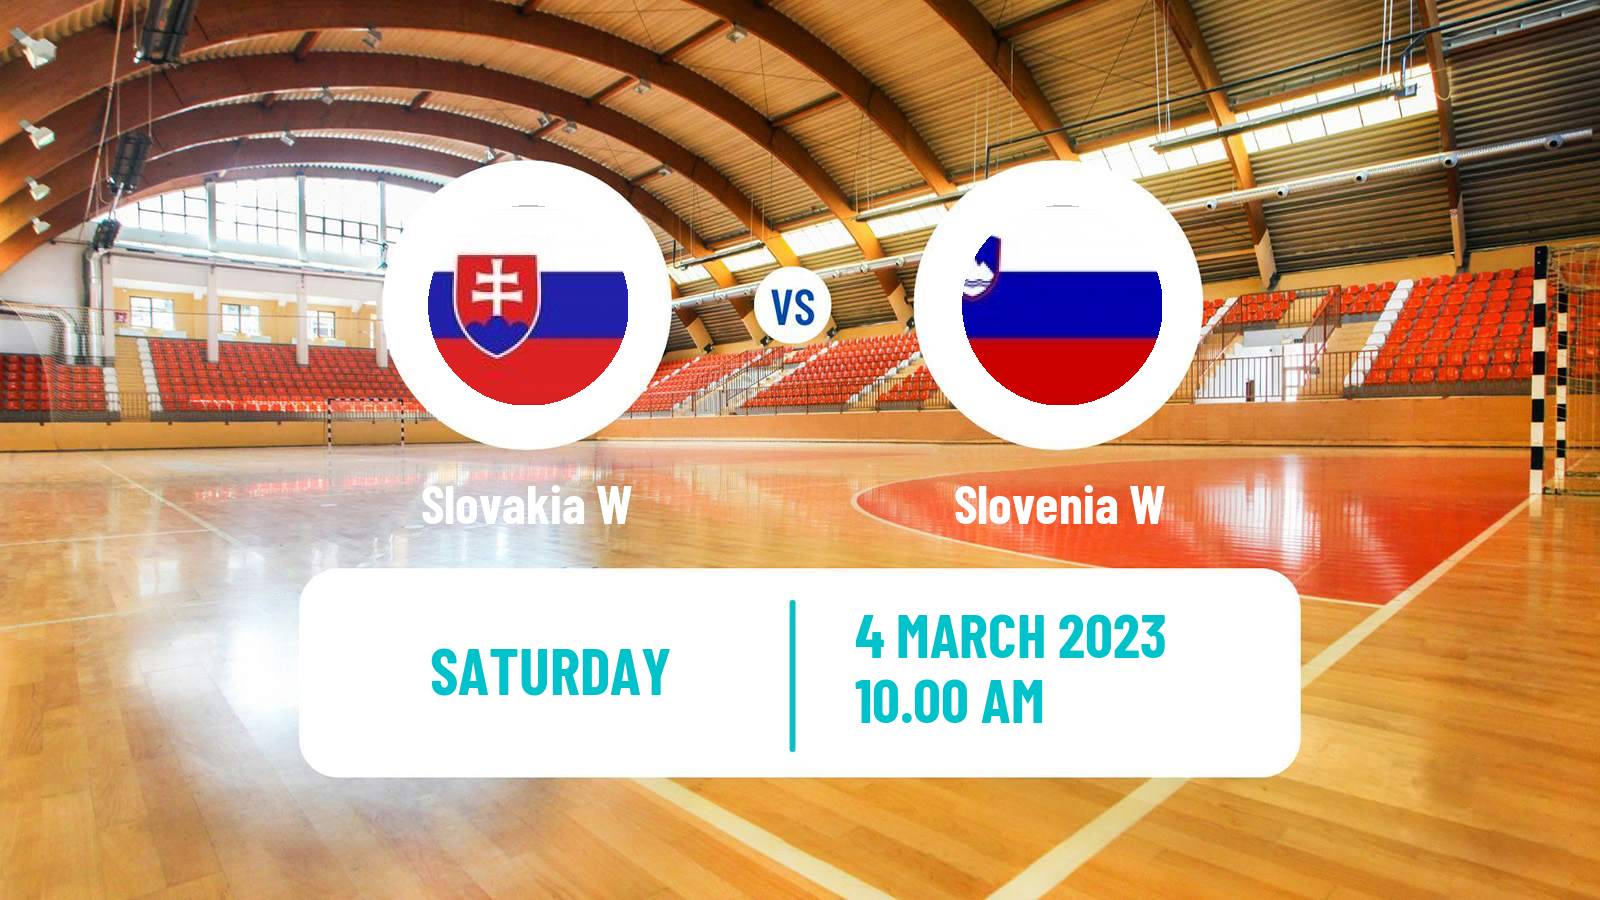 Handball Friendly International Handball Women Slovakia W - Slovenia W